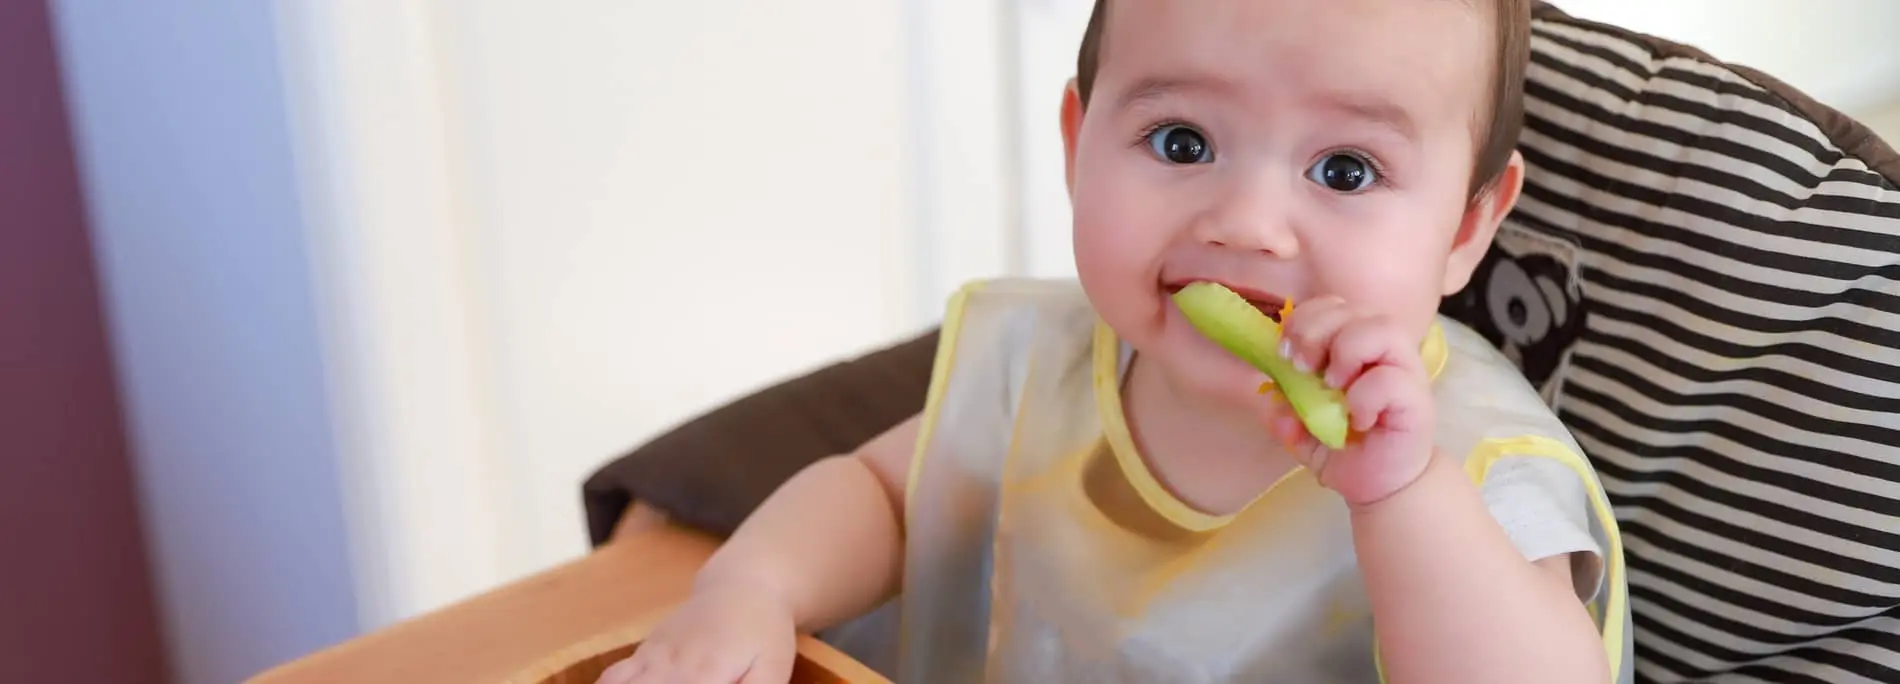 que puede comer un bebe de 8 meses sin dientes - Cuántas comidas se le da a un bebé de 8 meses